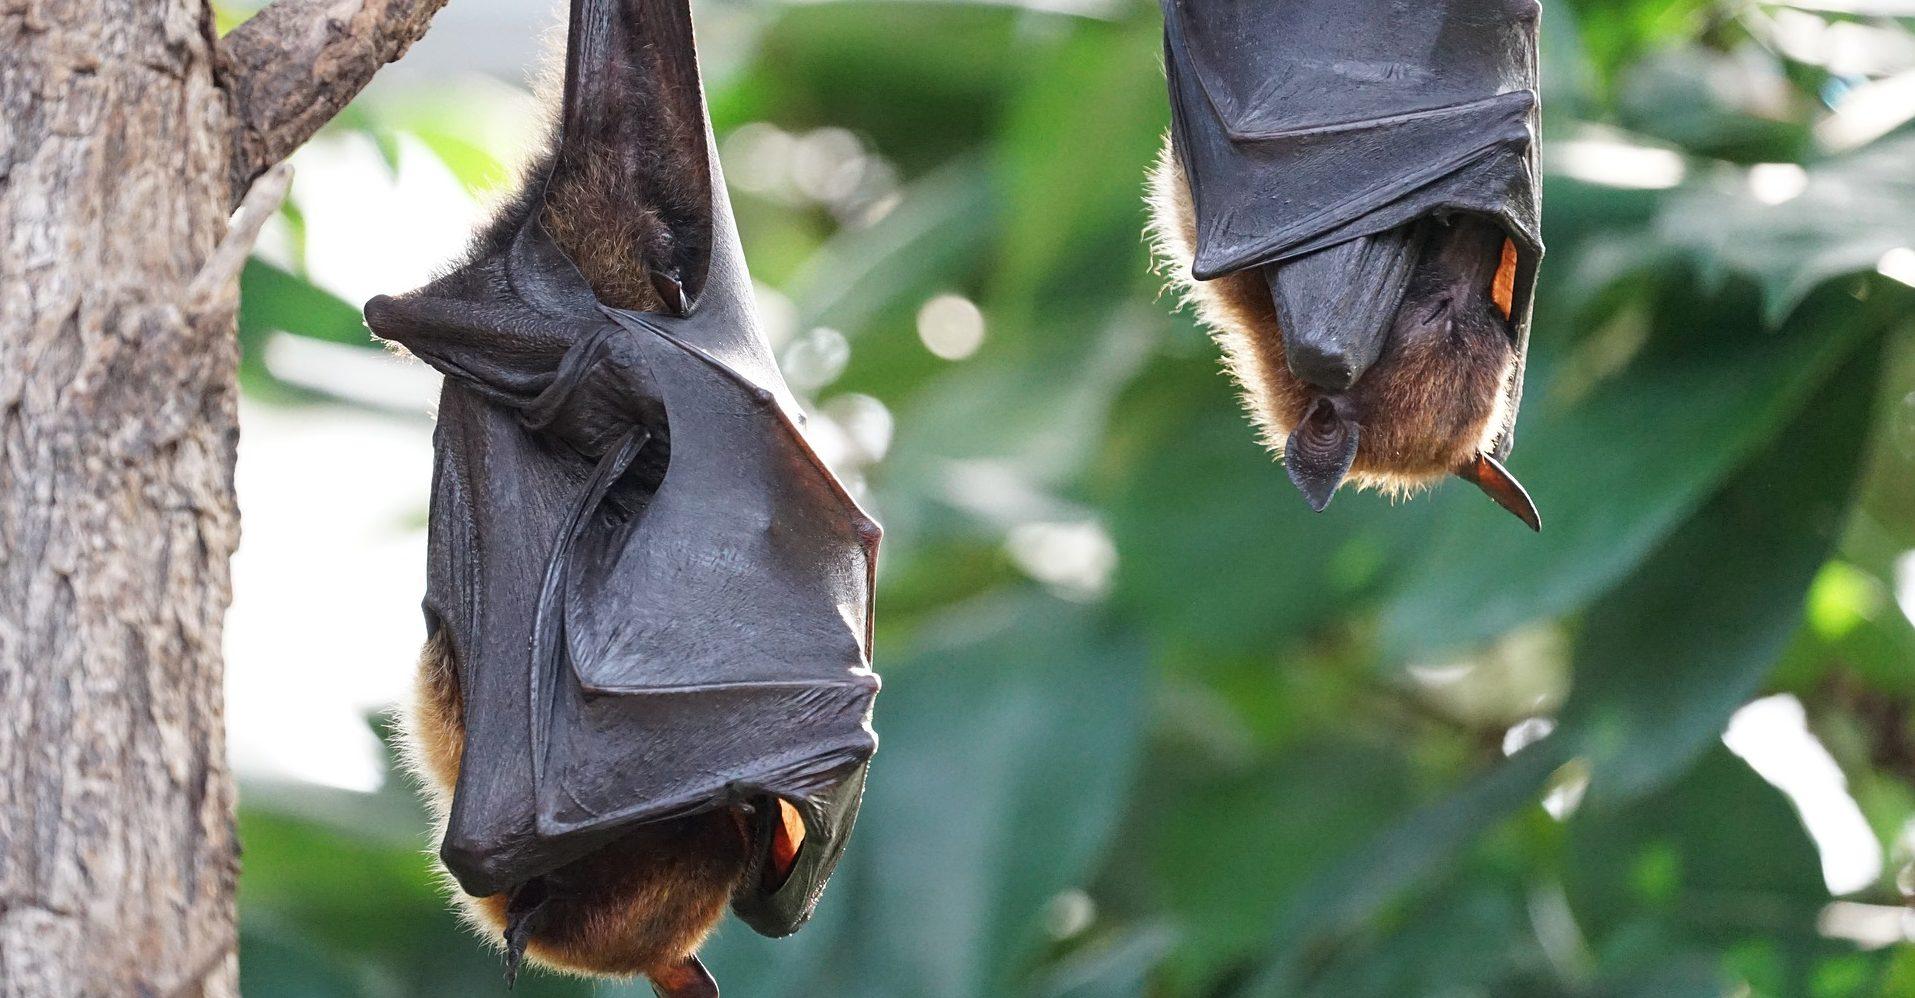 En defensa de los murciélagos: resistentes a los virus, pero no a los humanos y menos en época de COVID-19